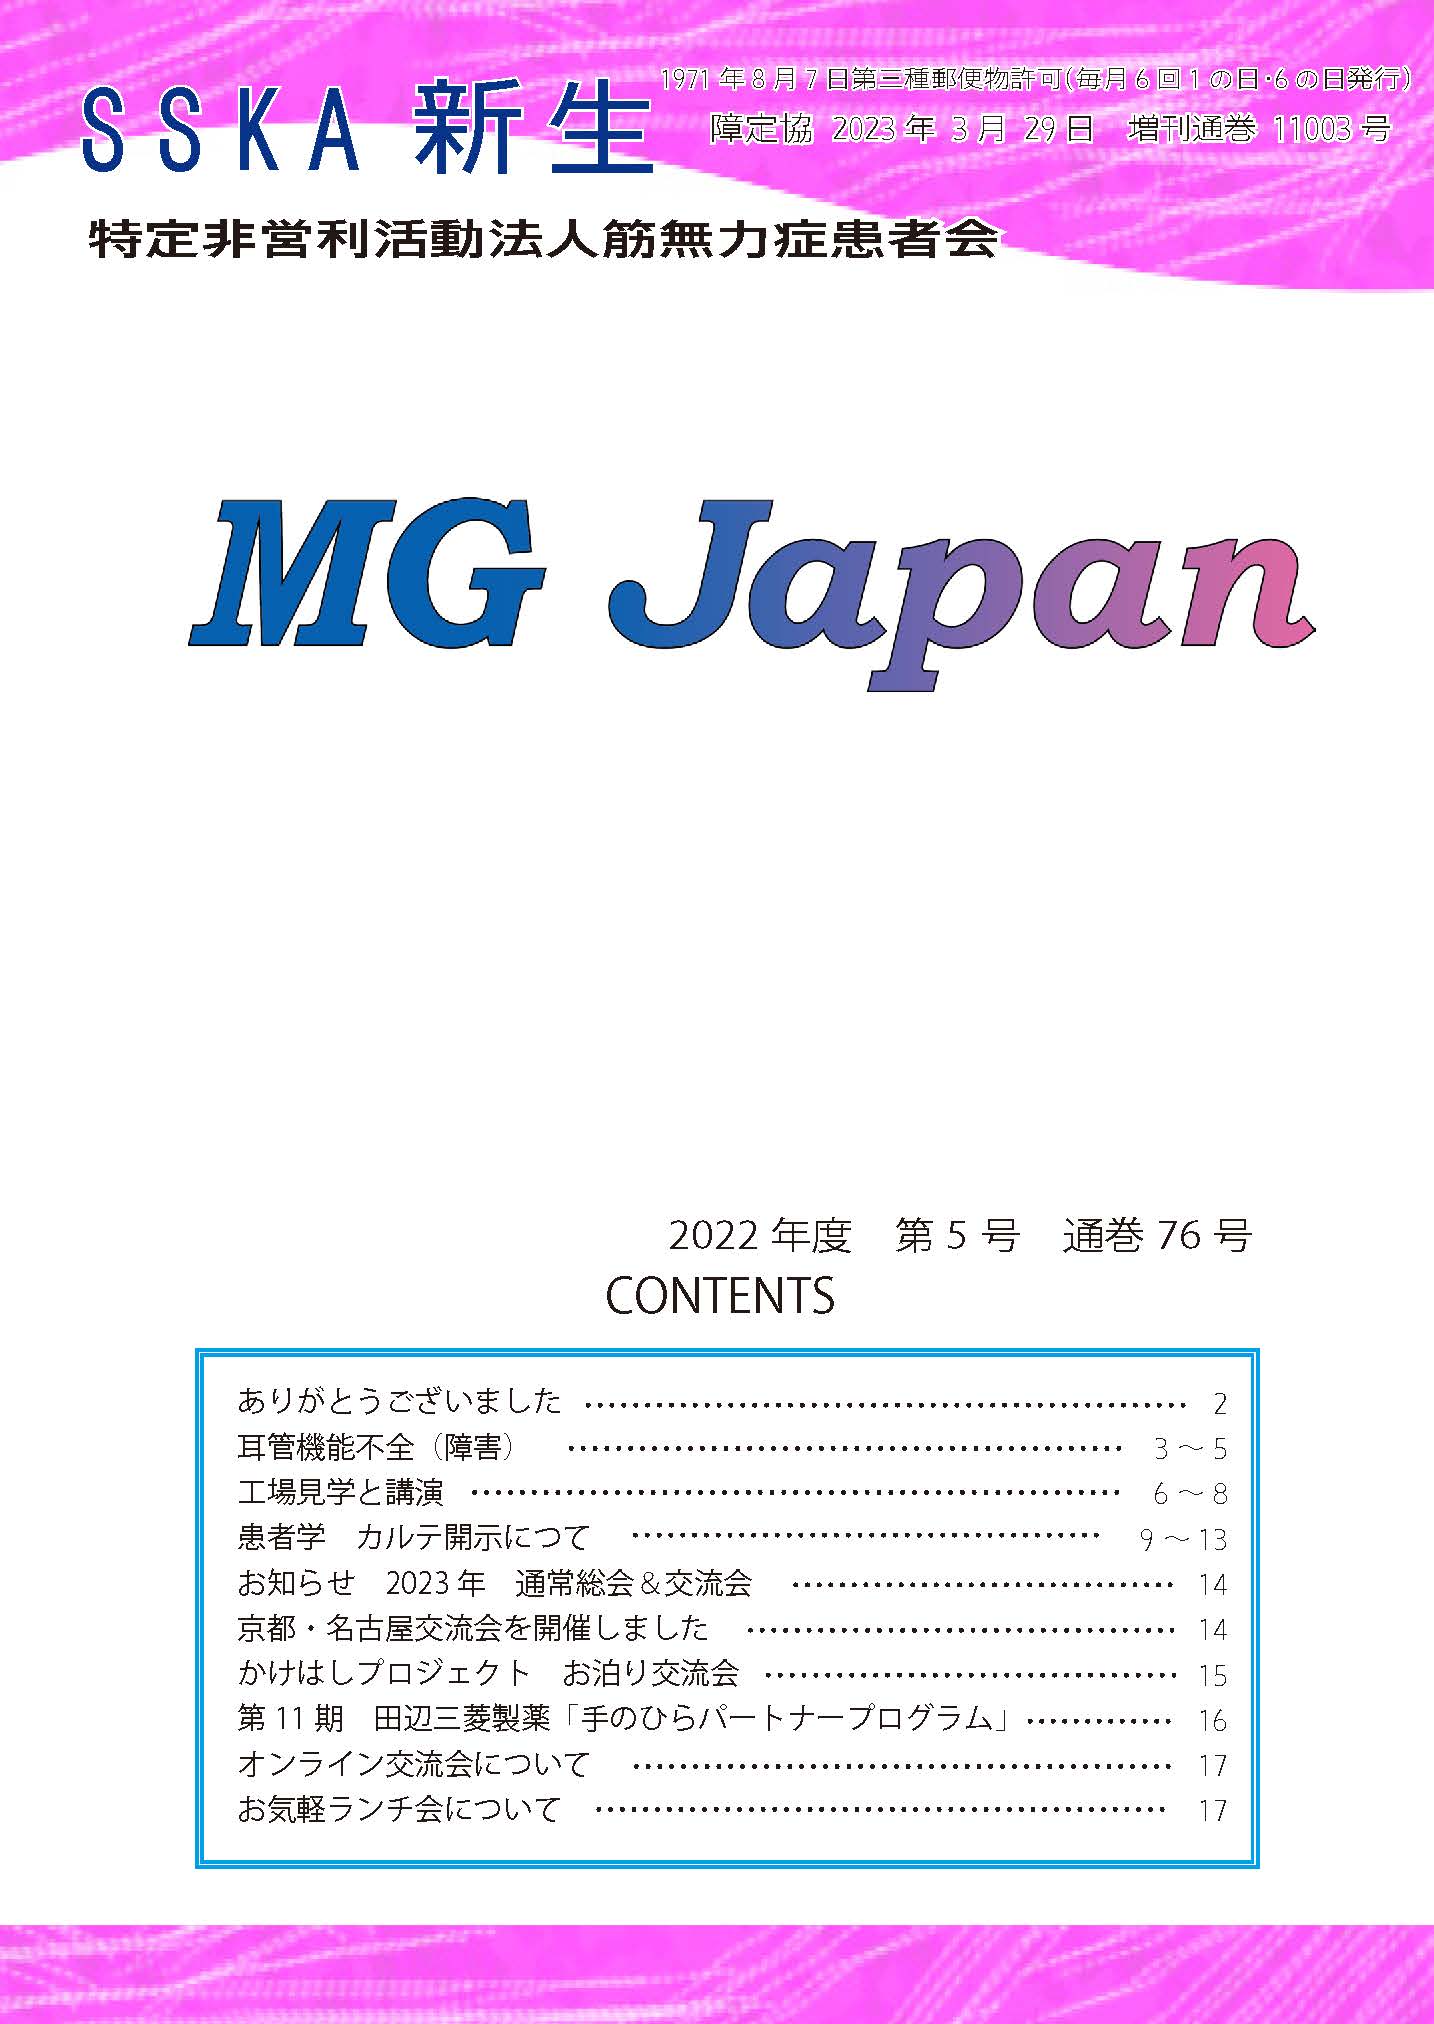 会報「MG Japan76号｝